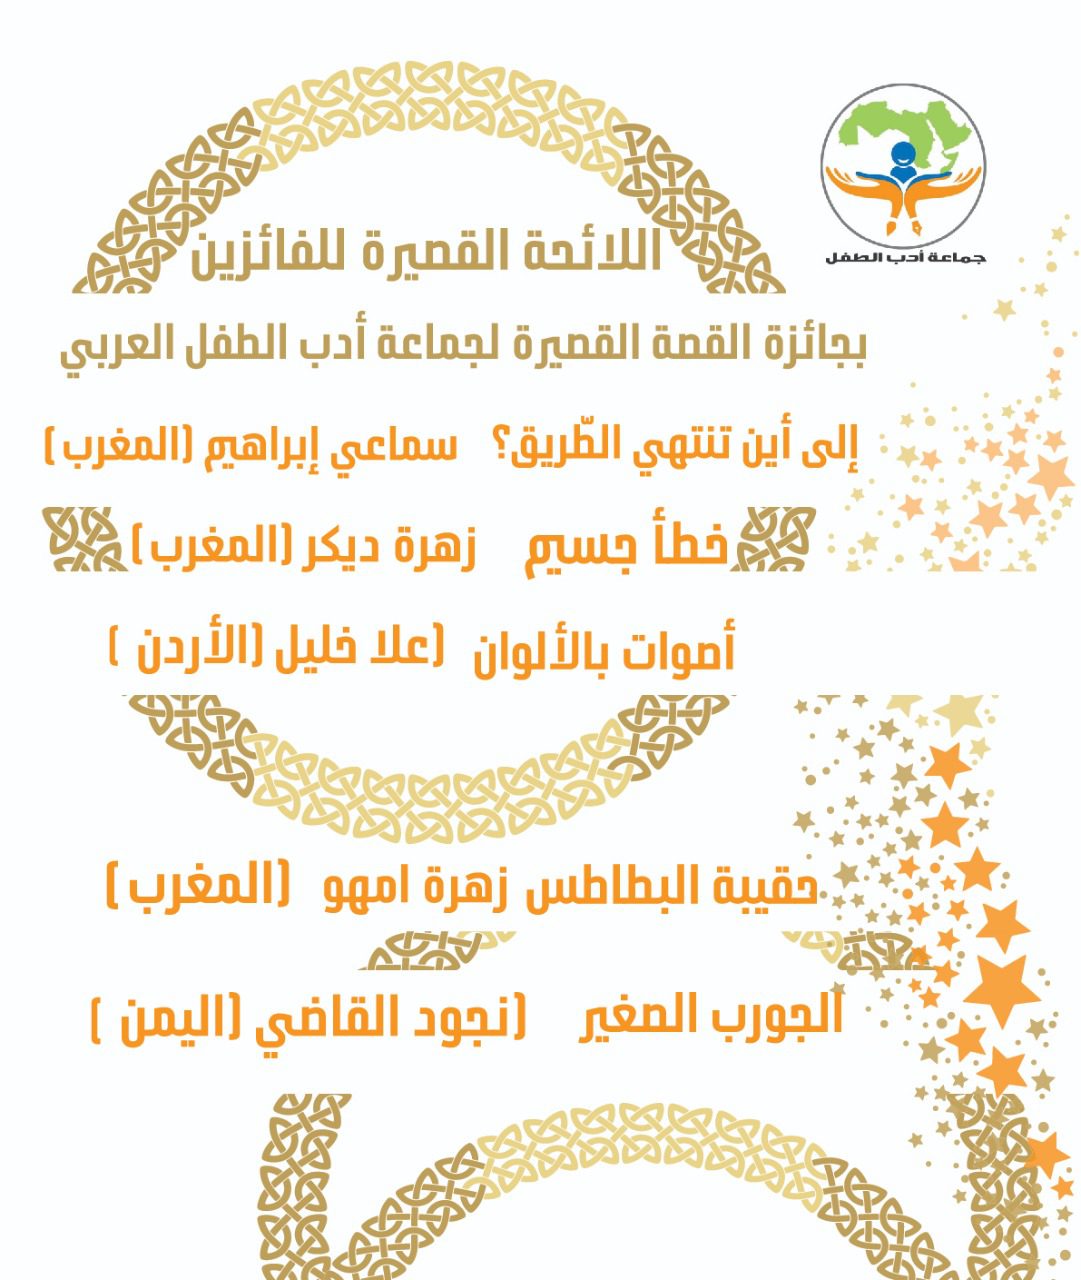 جوائز ومسابقات - جائزة القصة القصيرة لجماعة أدب الطفل العربي - الموسم الأول - قراءة وتحميل الكتاب الإلكترونيّ لقصص الفائزين بالمراتب العشر الأولى - موقع (كيدزوون | Kidzooon)